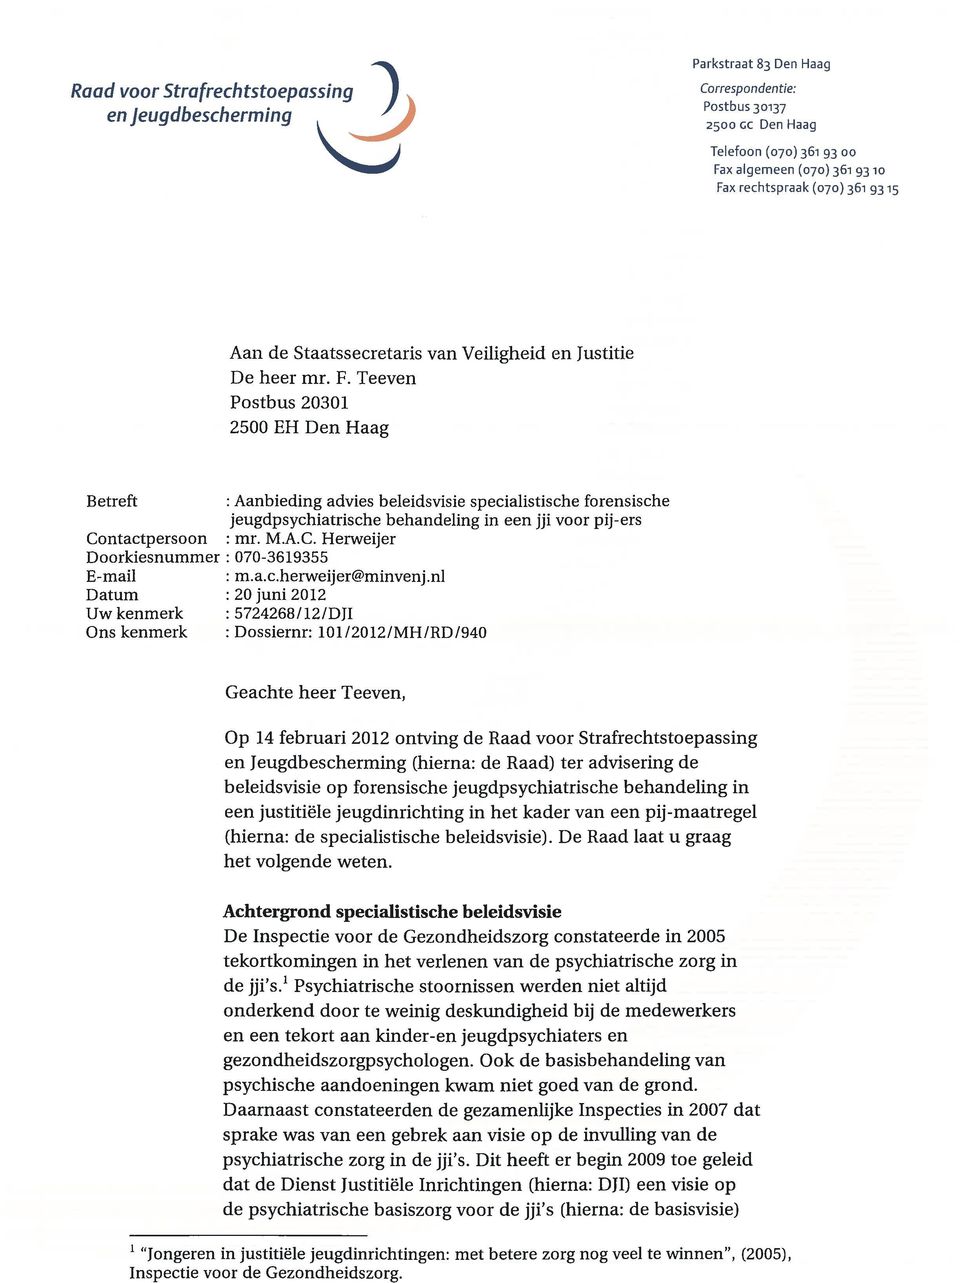 Teeven Postbus 20301 2500 EH Den Haag Betreft : Aanbieding advies beleidsvisie specialistische forensische jeugdpsychiatrische behandeling in een jji voor pij-ers Co